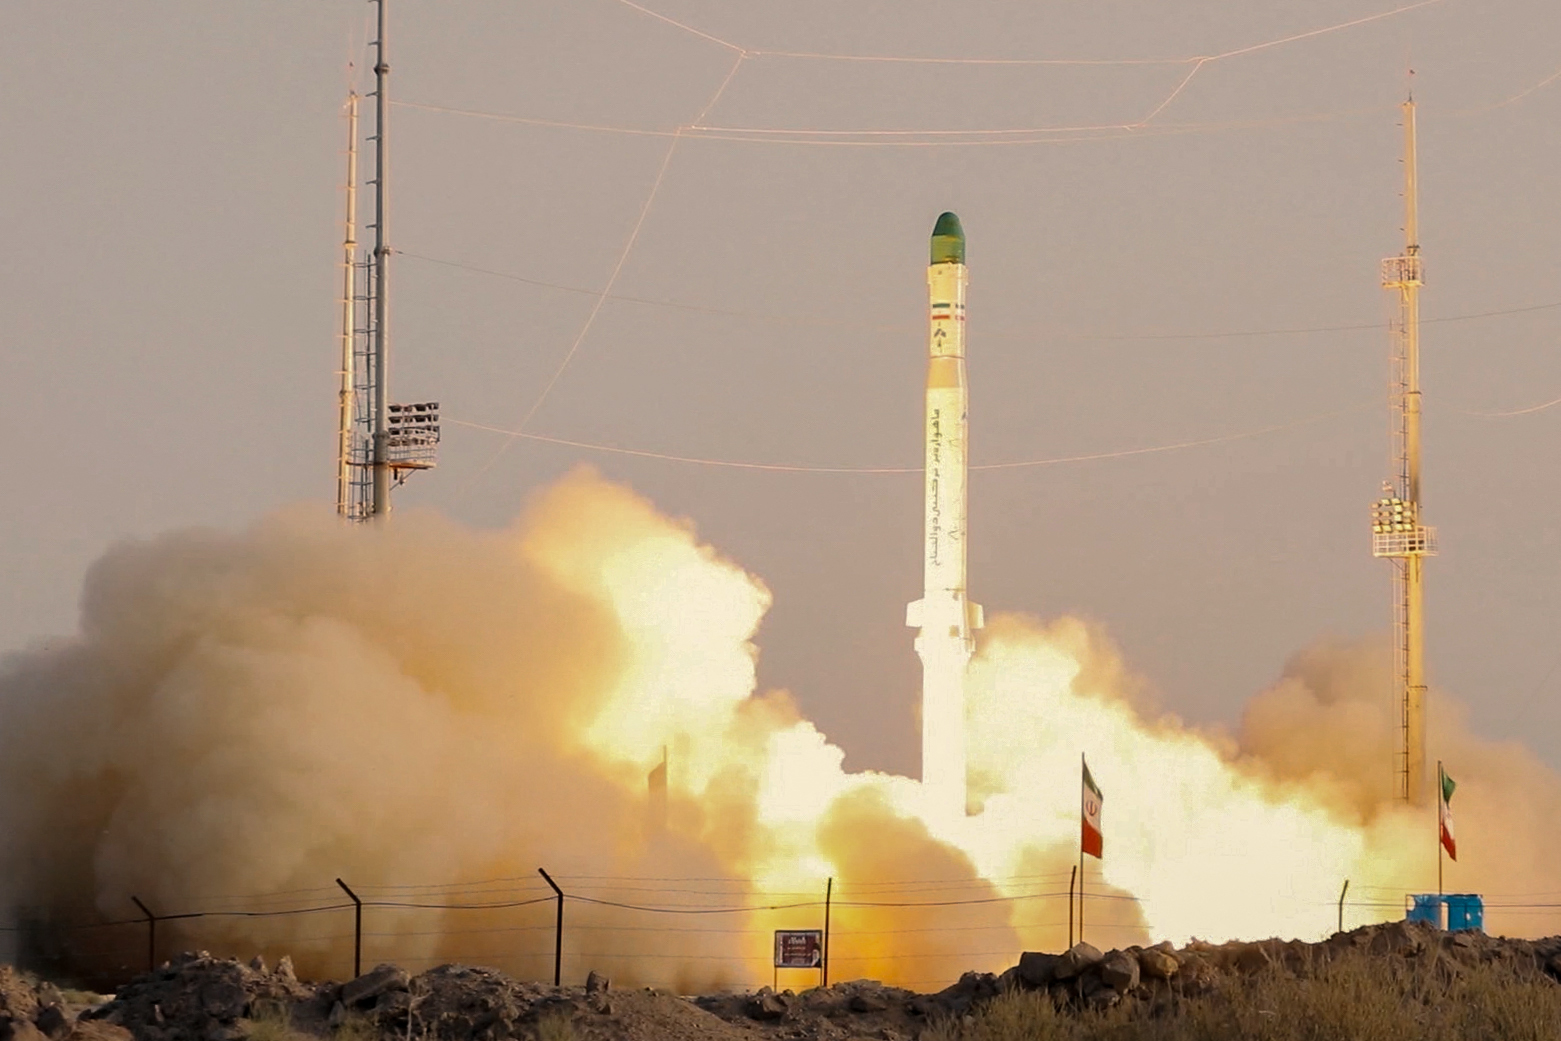 伊朗成功试射可携带卫星火箭 美国批评破坏稳定